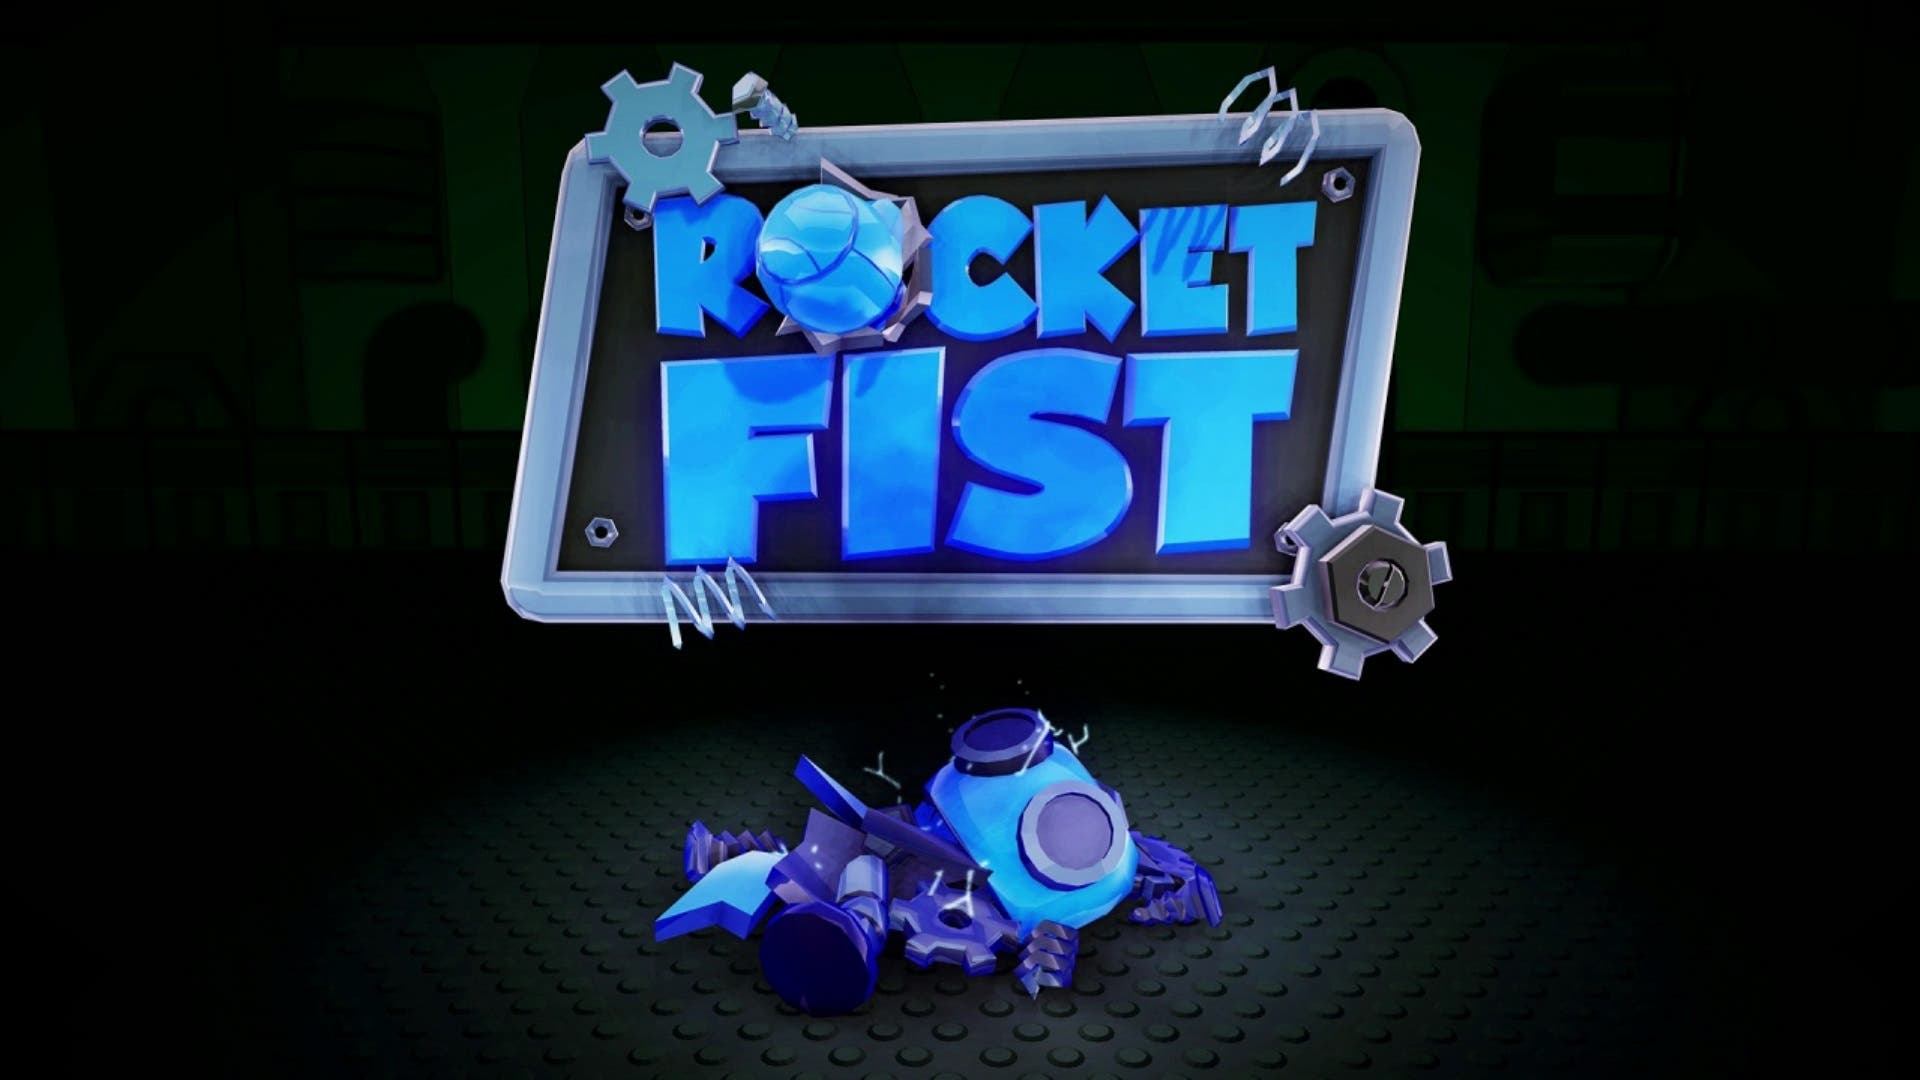 [Act.] Rocket Fist llegará el 13 de julio a la eShop europea de Nintendo Switch, gameplay